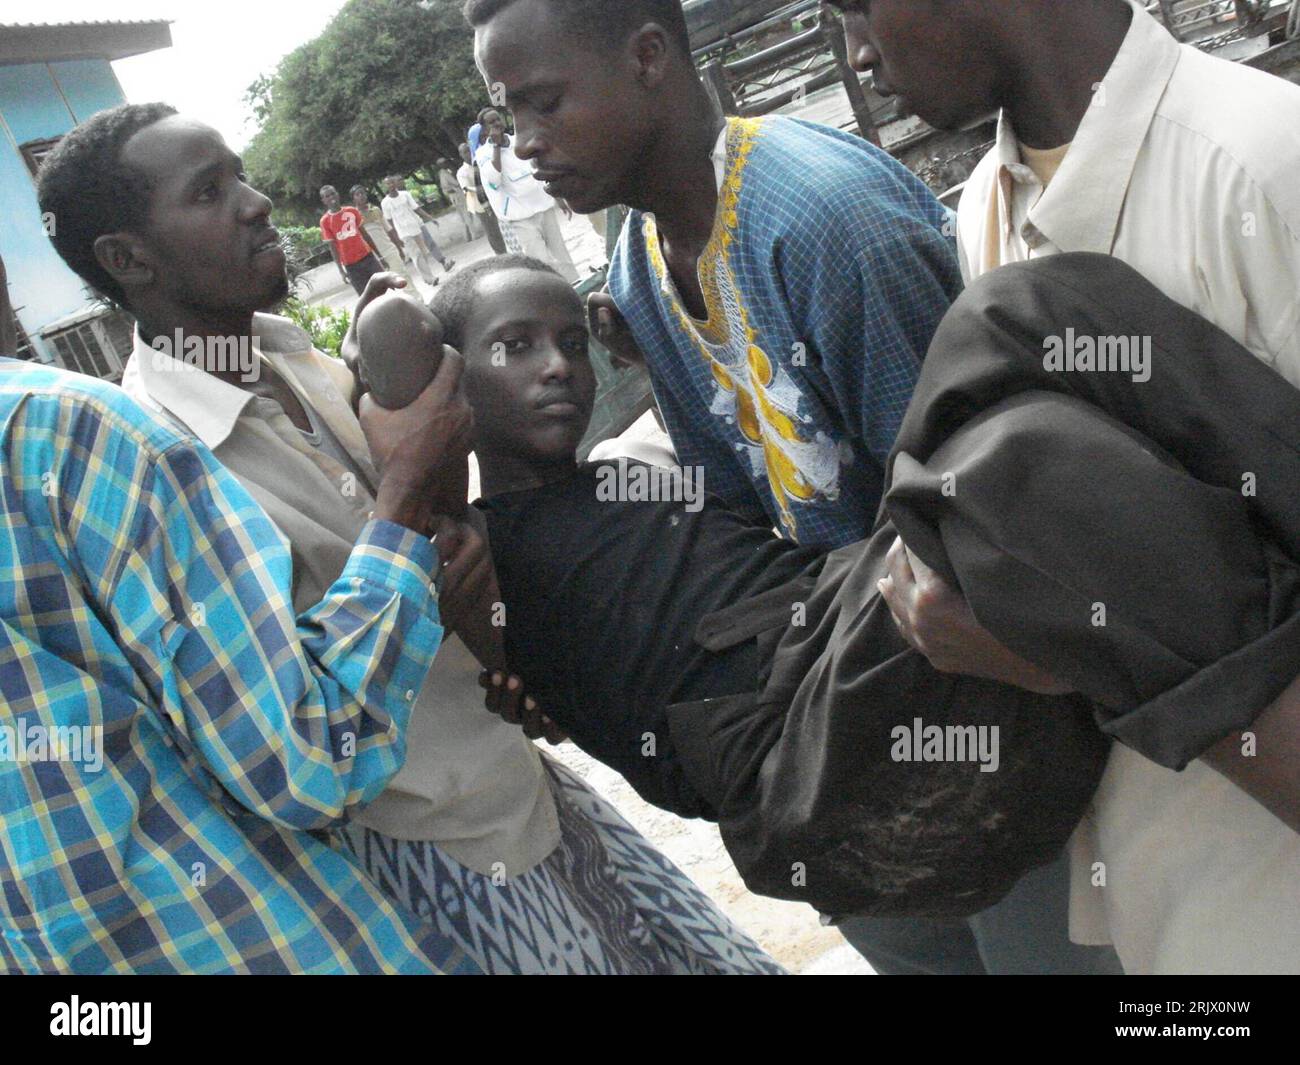 Bildnummer: 52102325  Datum: 05.09.2007  Copyright: imago/Xinhua Somalier tragen einen verletzten Jugendlichen in Mogadishu - PUBLICATIONxNOTxINxCHN, Personen; 2007, Mogadishu, Verletzung, Verletzungen, verletzt, verletzte, verwundet, verwundeter, verwundete, Somali, Somalis, Jugendlicher, Jugendliche, Mann; , quer, Kbdig, Gruppenbild, Somalia,  ,o0 Bürgerkrieg, Opfer Stock Photo